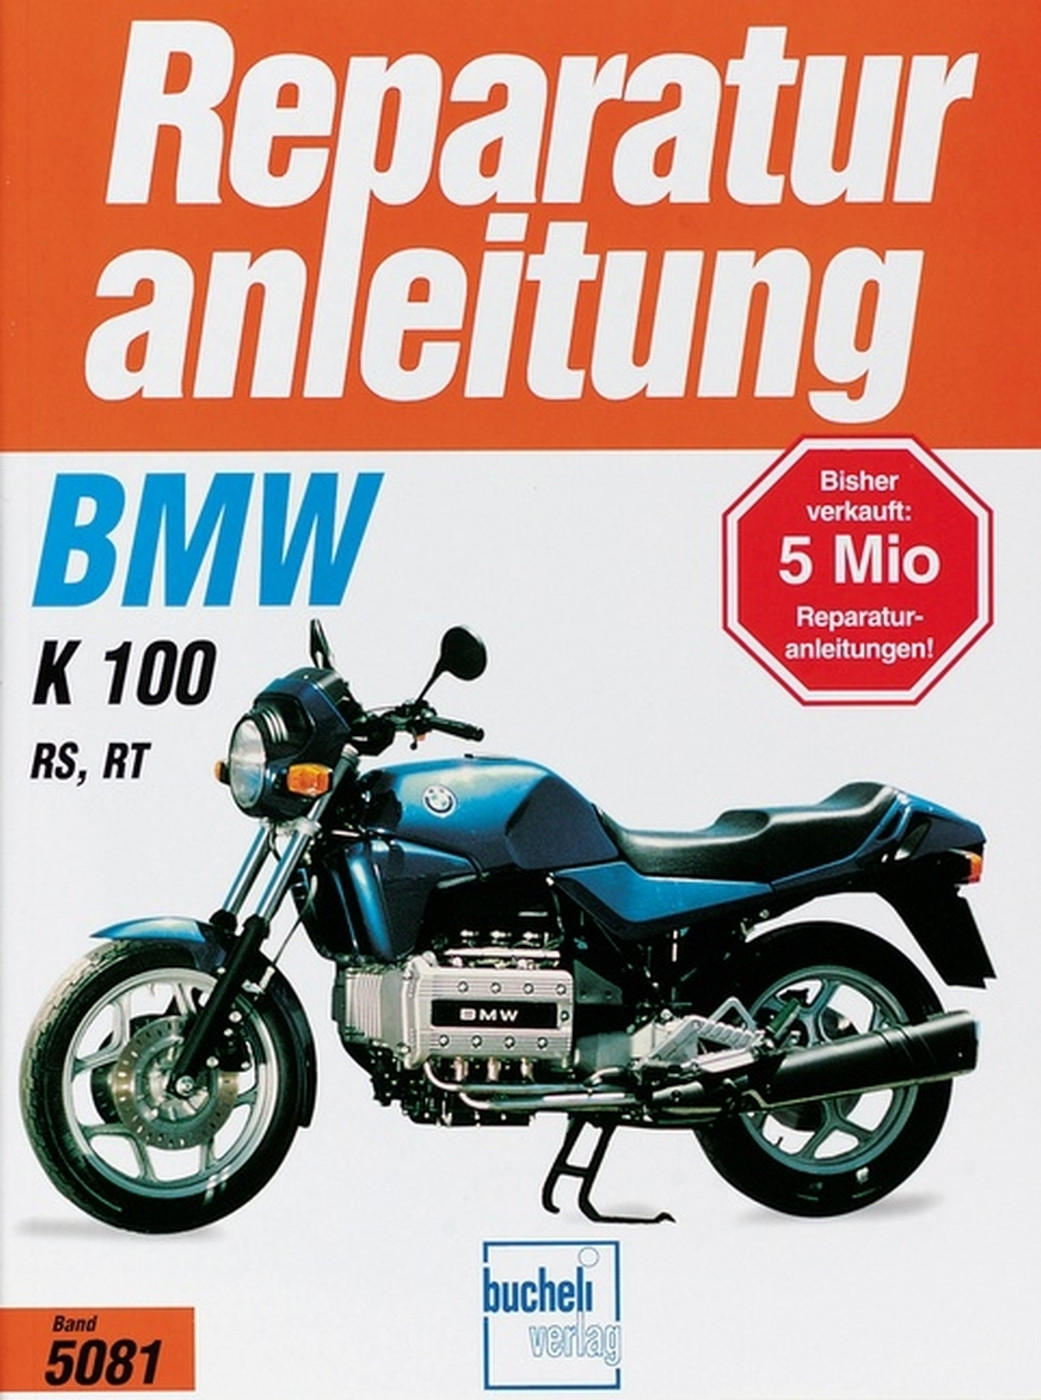 BMW K 100 RS / K 100 RT   Bj 1986-1991